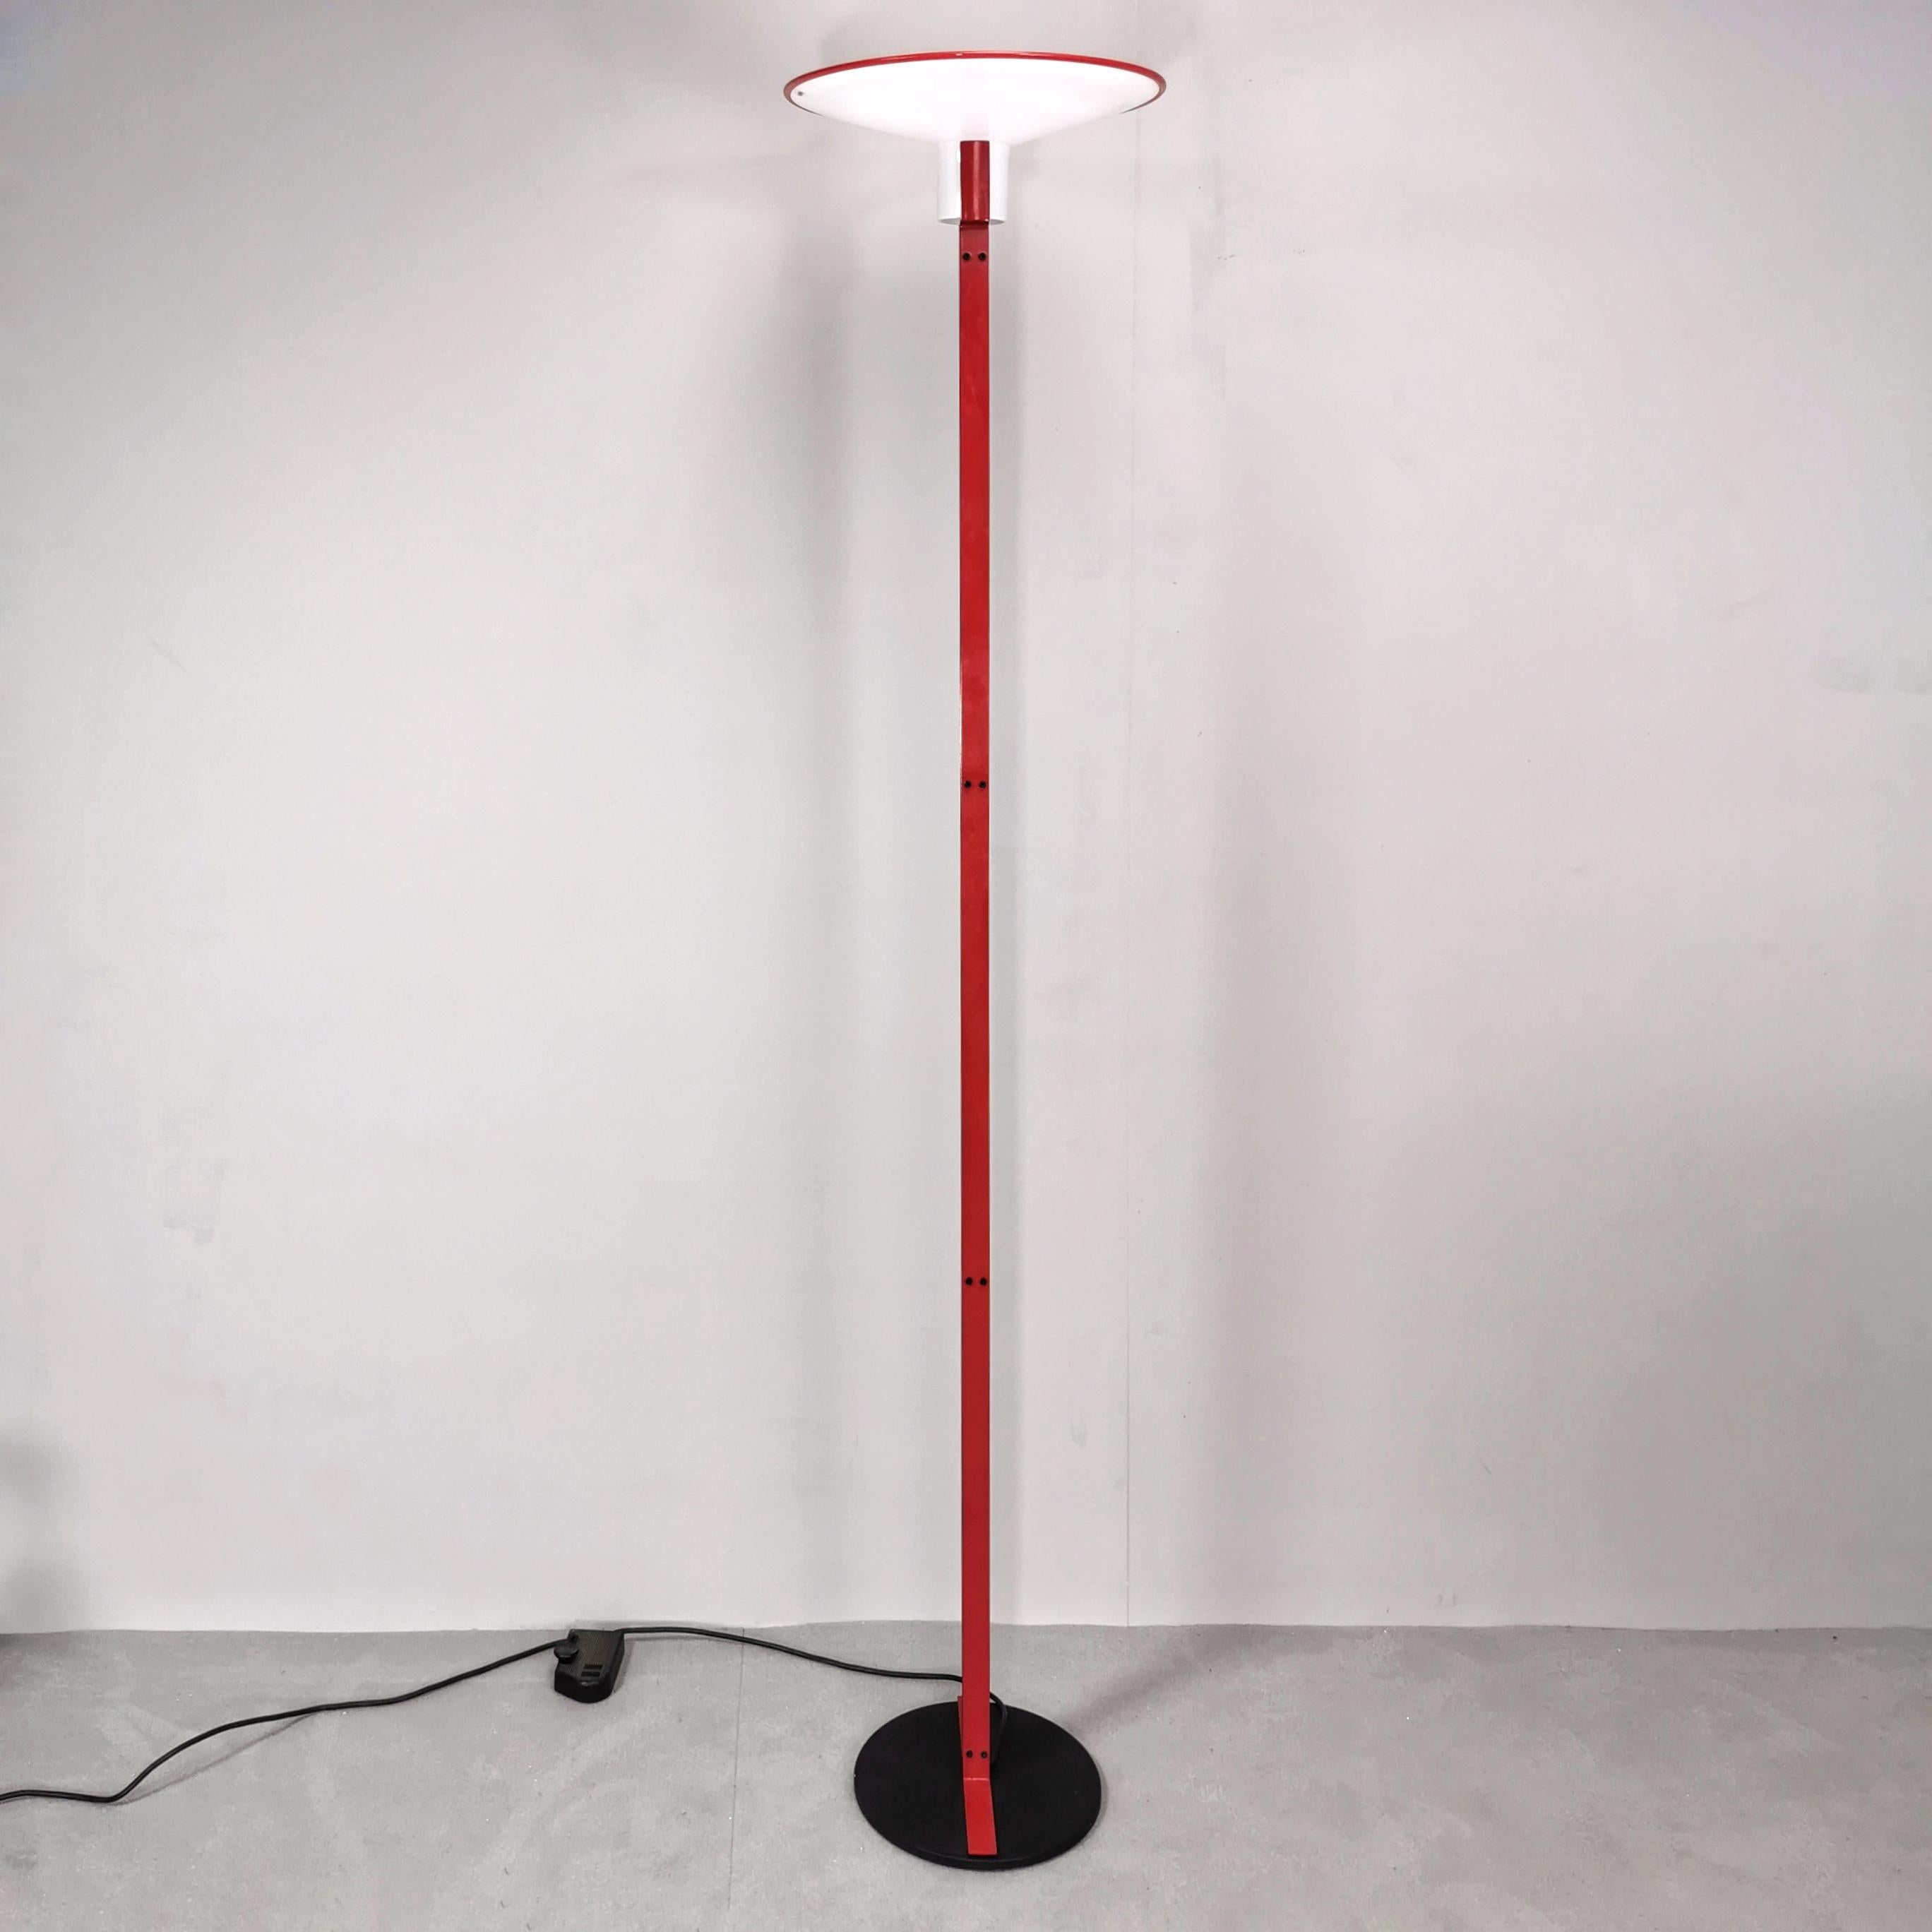 Venini art (Veart) Lampe entworfen und hergestellt in den frühen 1980er Jahren. Diese elegante und sehr seltene Stehleuchte des italienischen Herstellers VeArt zeigt bezaubernde Details. Aus einem runden Sockel ragen zwei flache Stiele von schöner